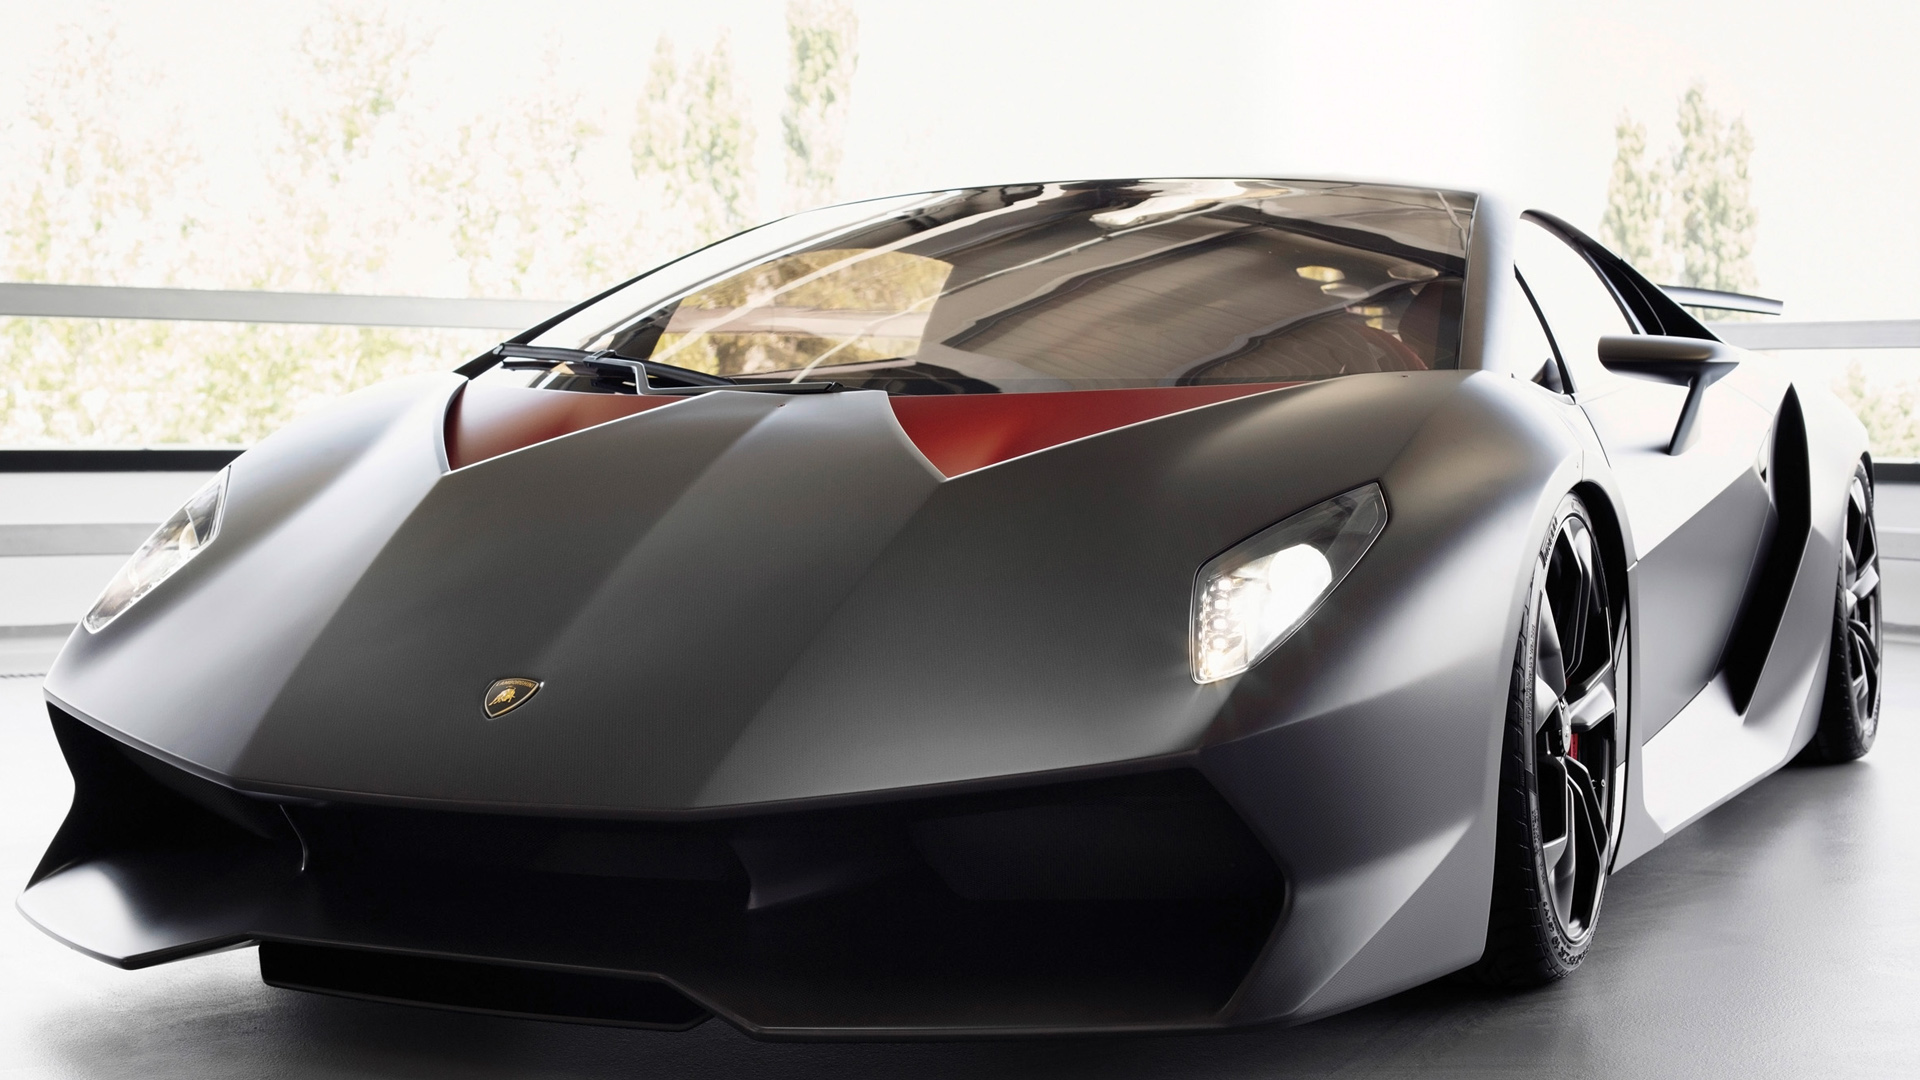 Lamborghini Sesto Elemento Concept Wallpaper | HD Car ...